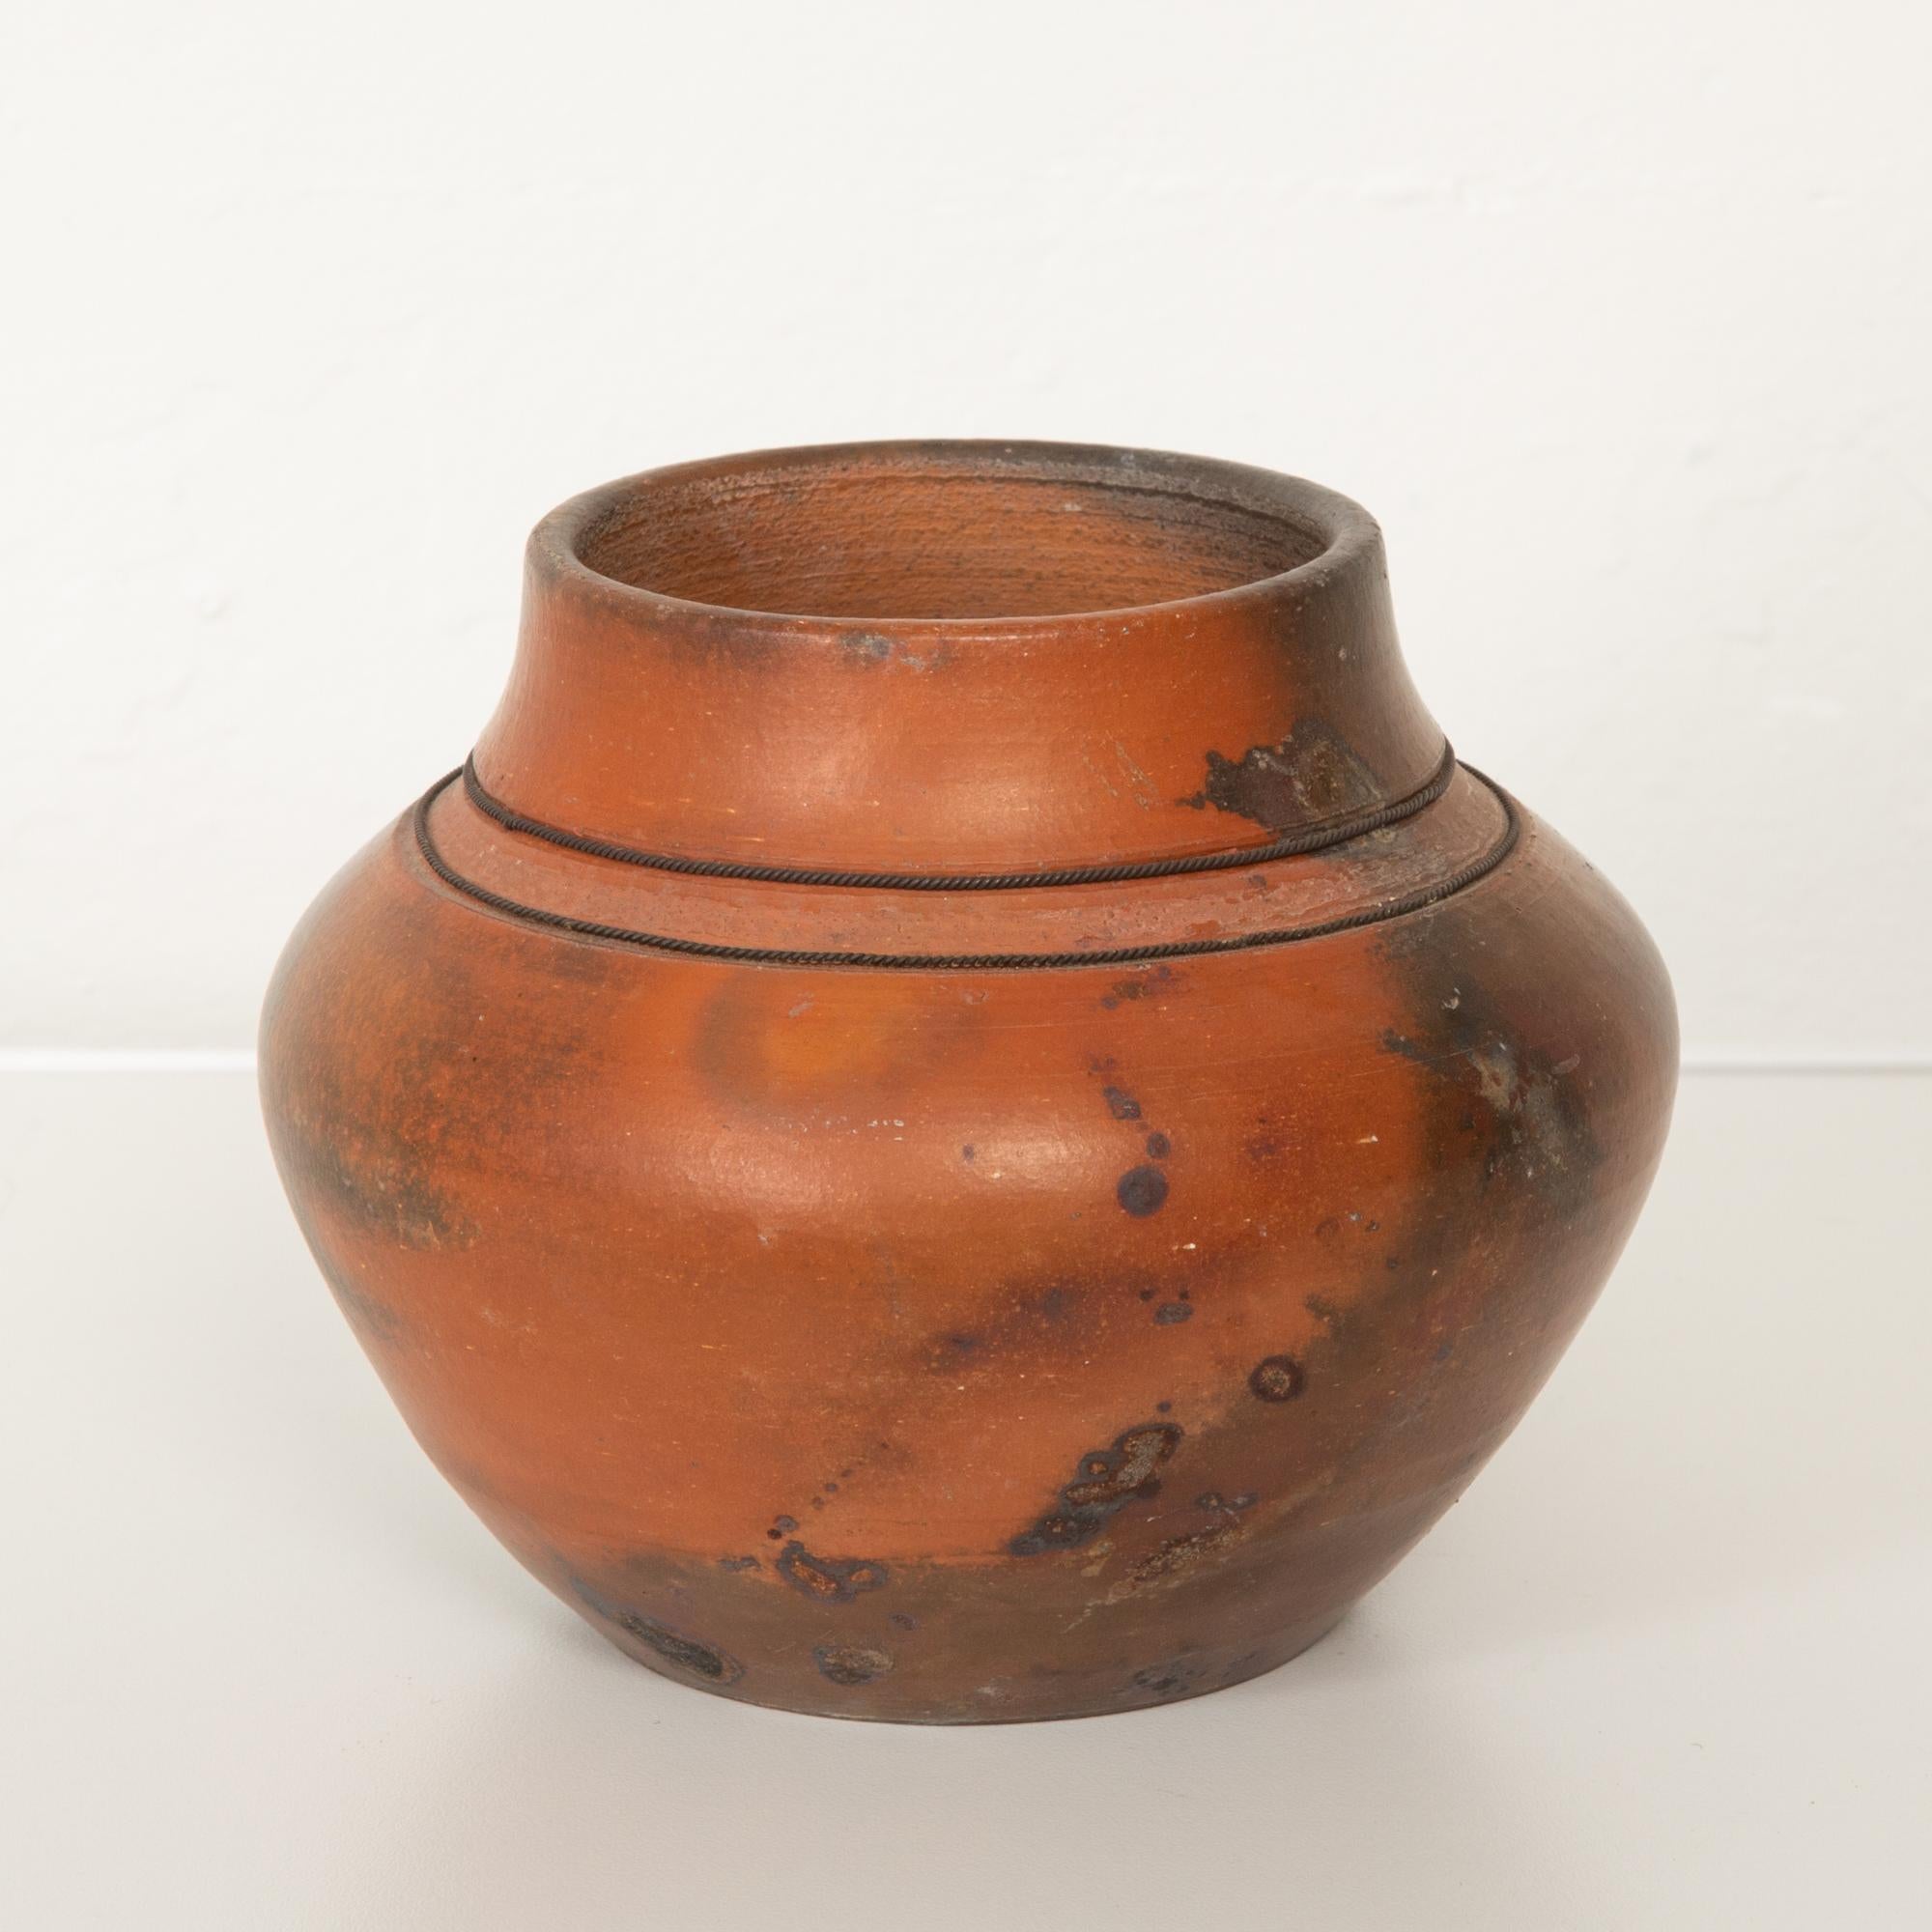 American Studio Ceramic Vase with Raku Glaze